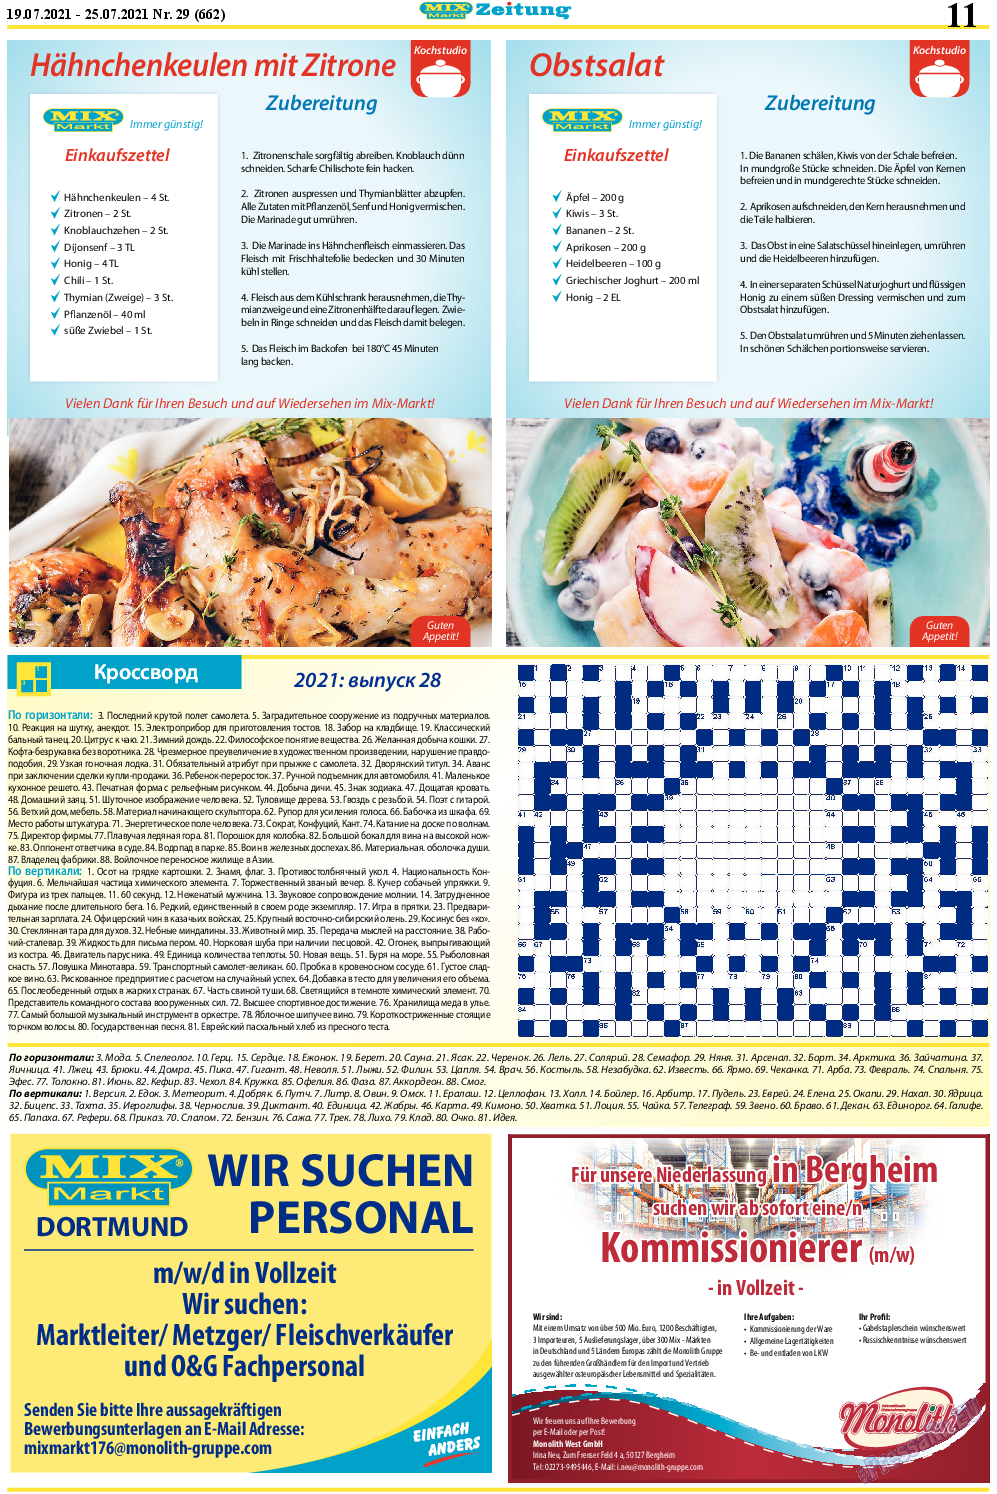 MIX-Markt Zeitung, газета. 2021 №29 стр.11